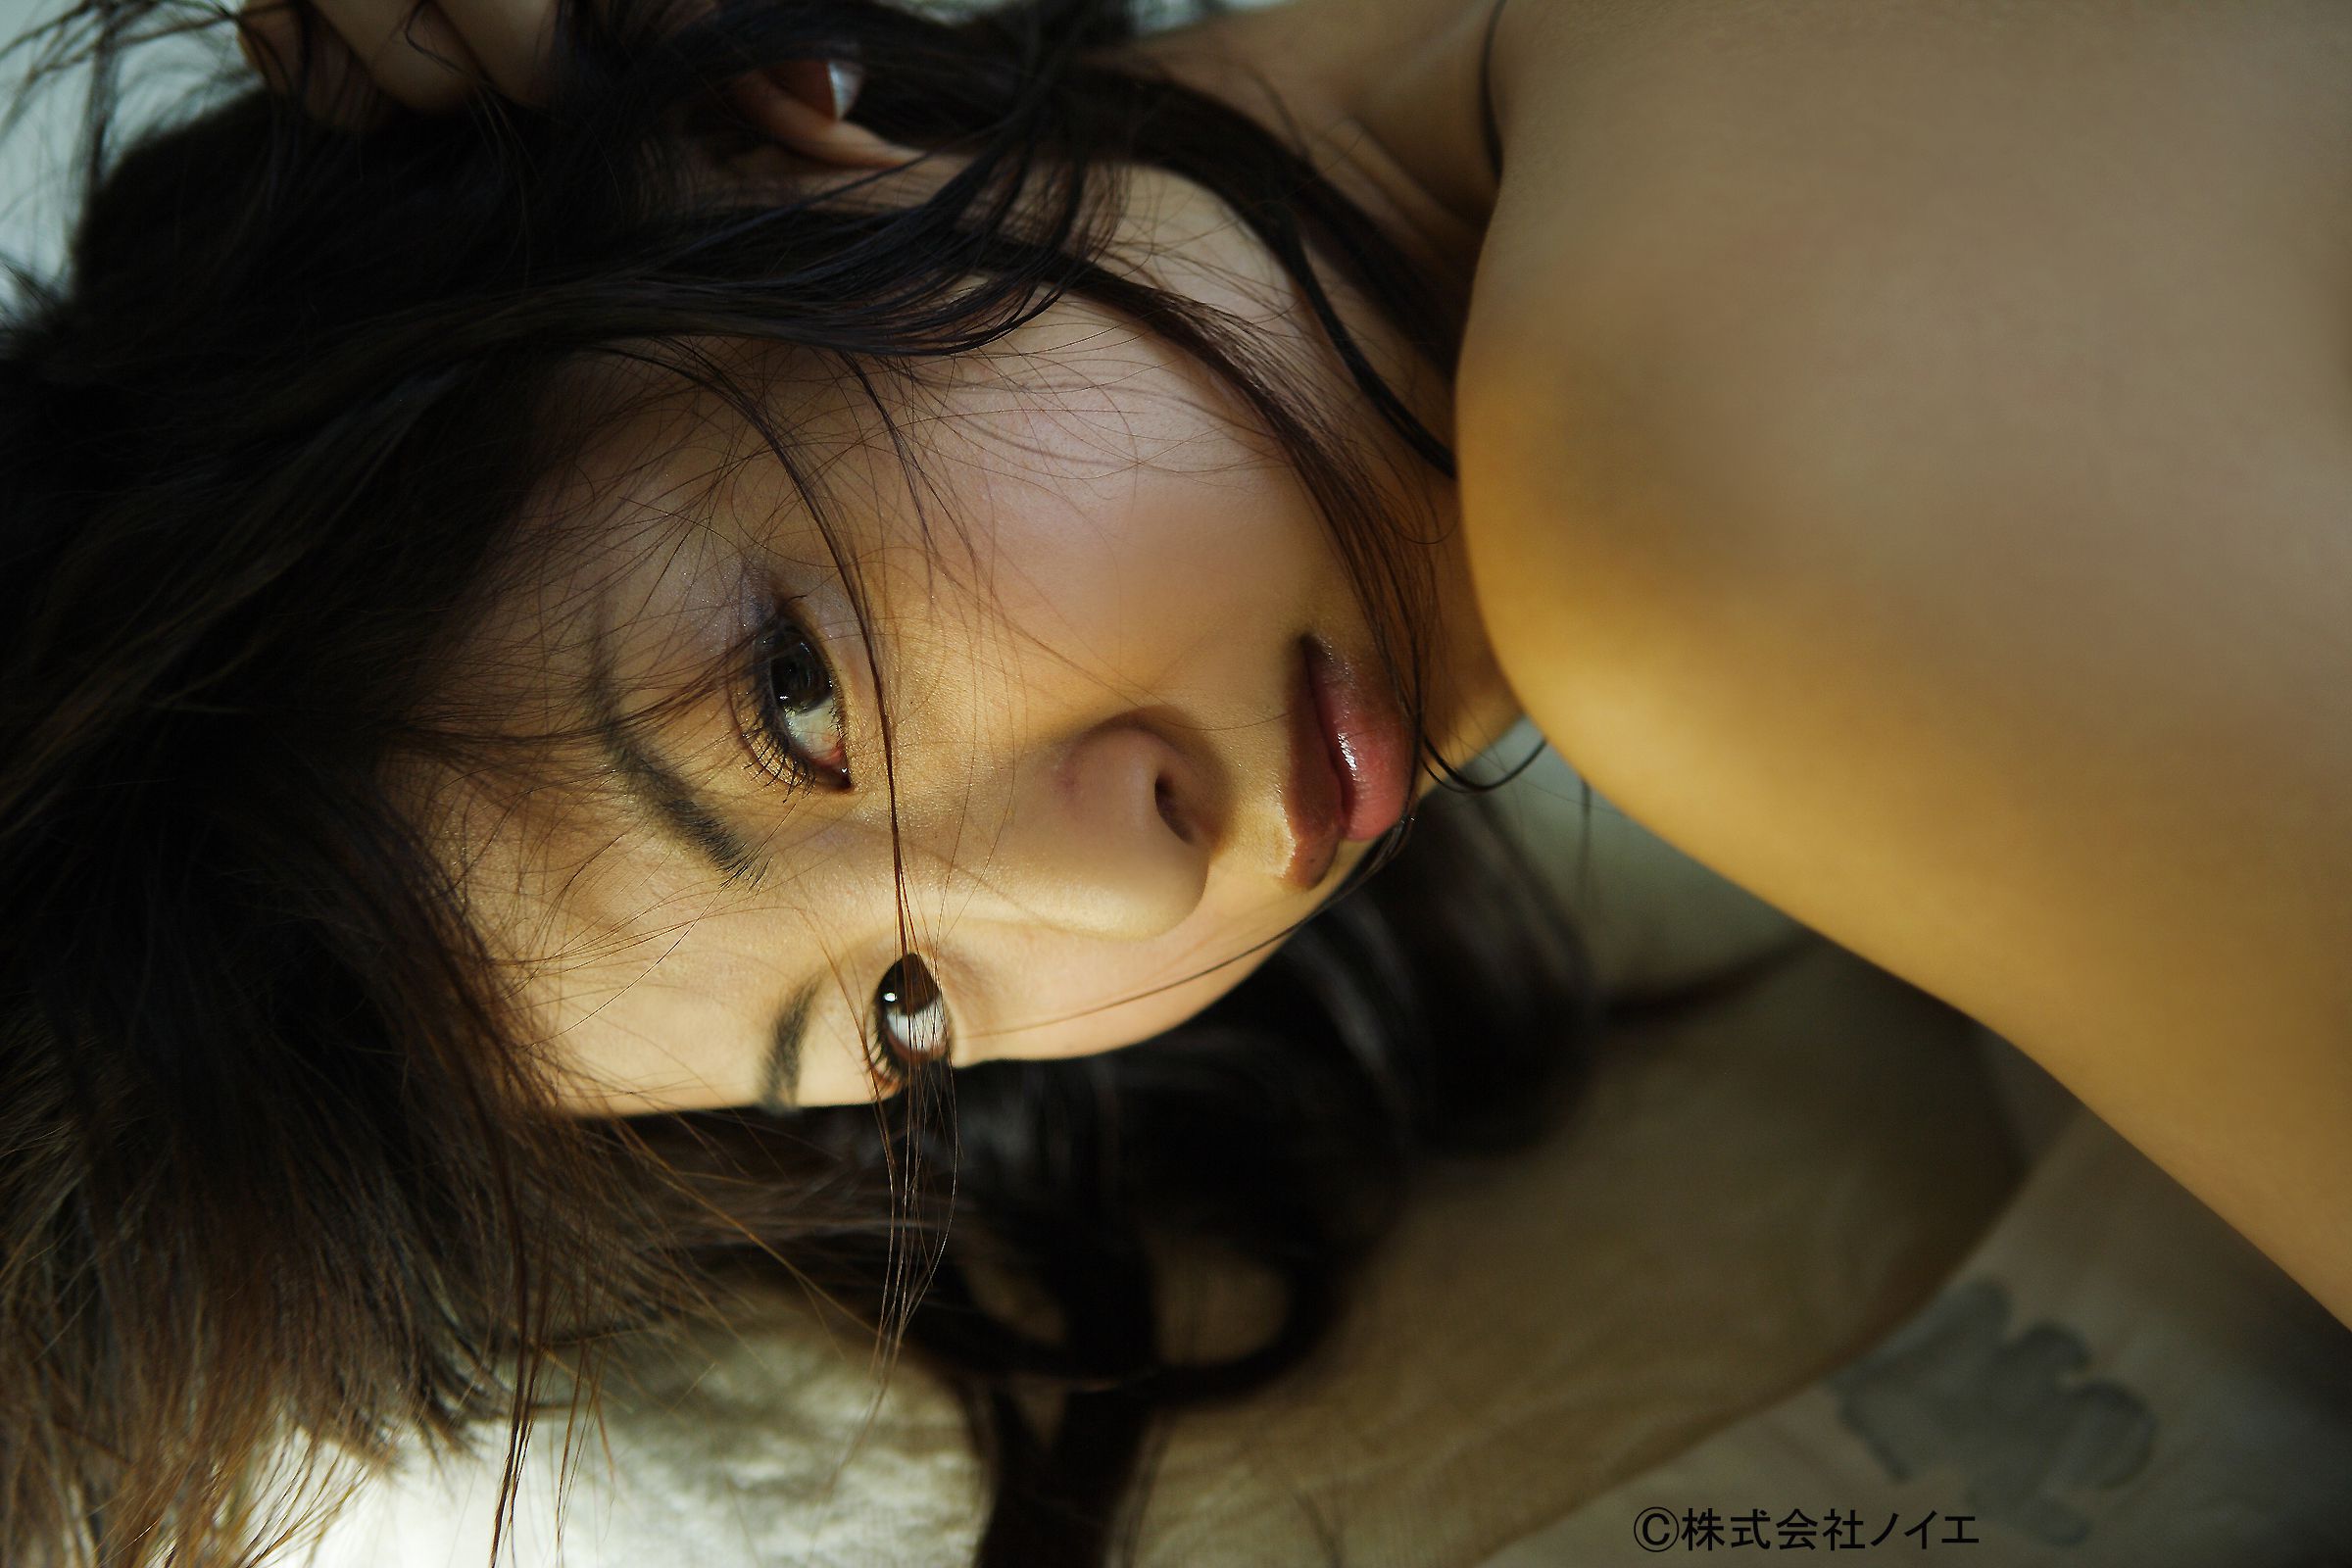 [NS Eyes] SF-No.421 Mariko Okubo 大久保麻梨子/大久保麻理子 写真集